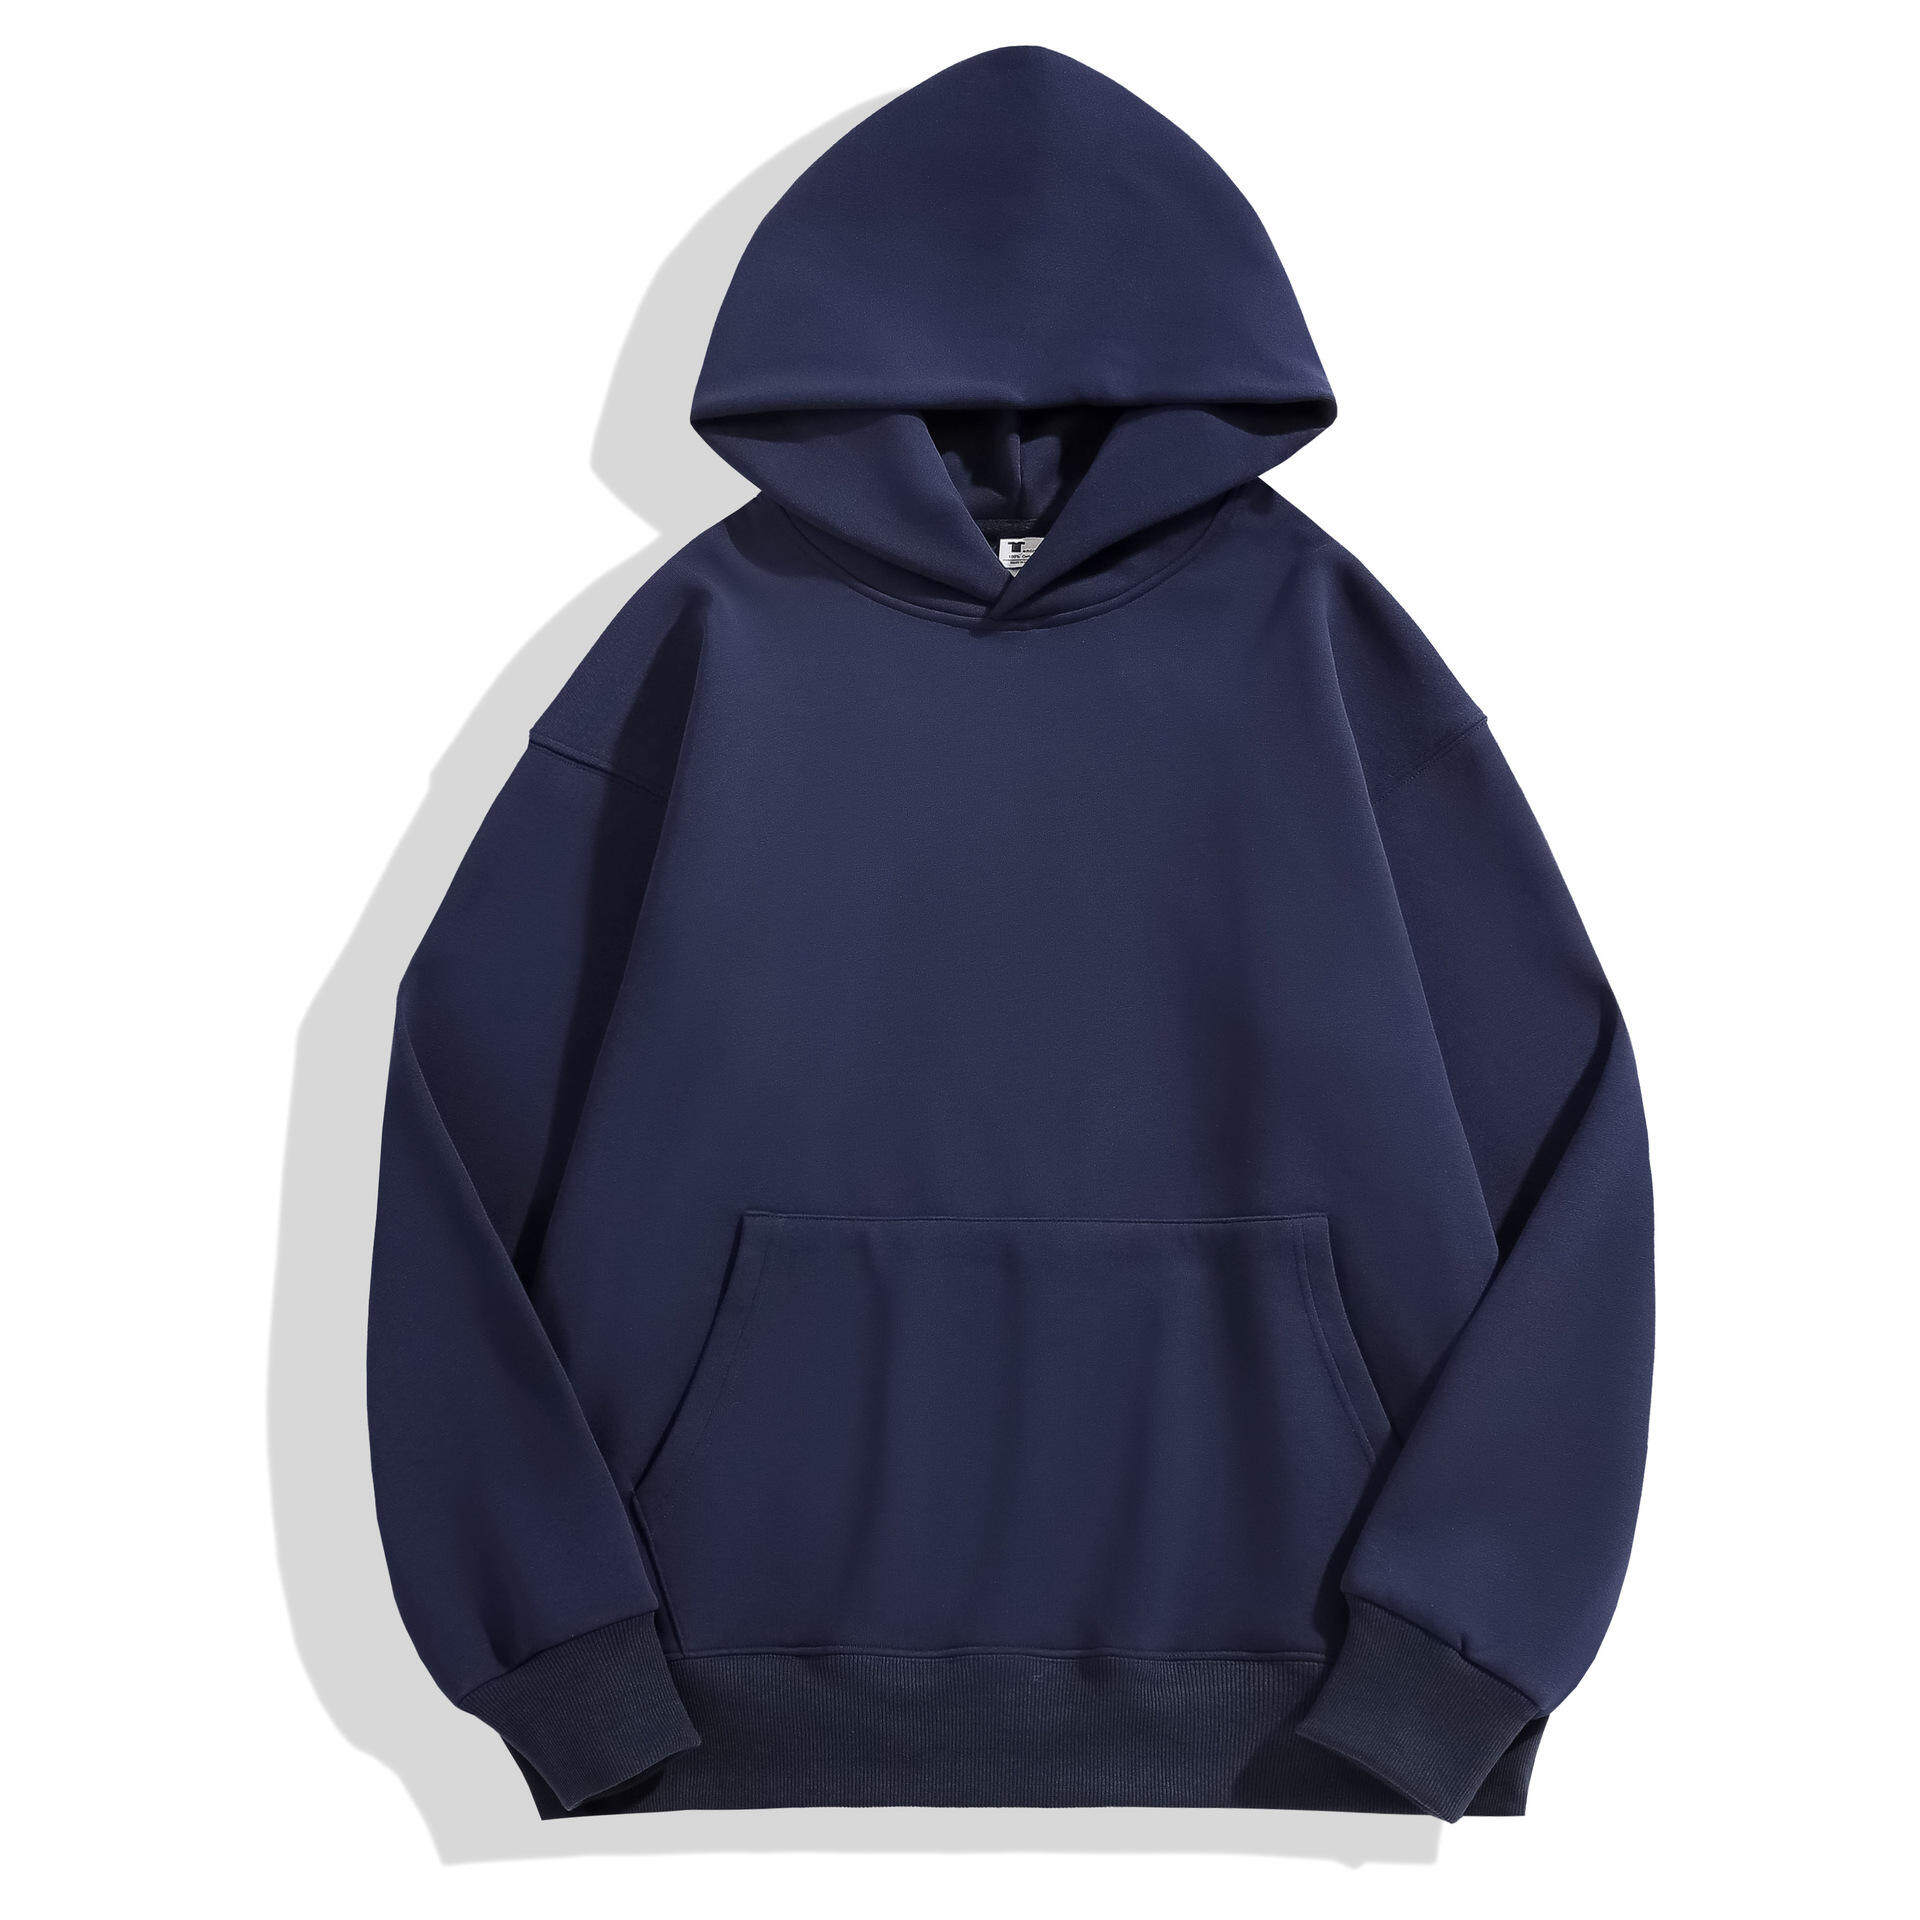 wholesale blank zip up hoodies, blank crop top hoodie wholesale, blank hoodies manufacturer, blank hoodie manufacturers, buy blank hoodies in bulk